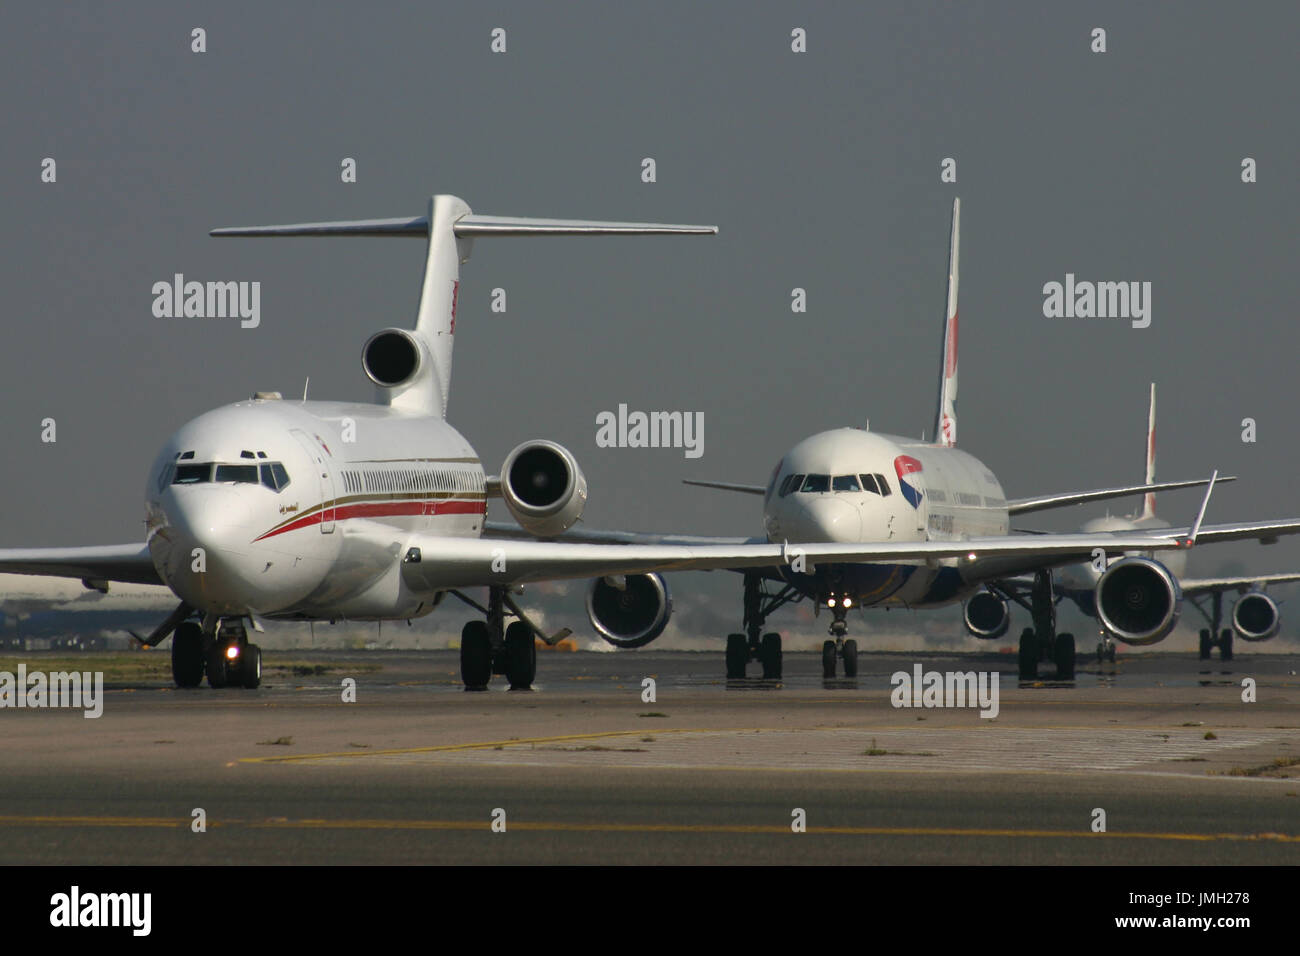 aircraft queue Stock Photo